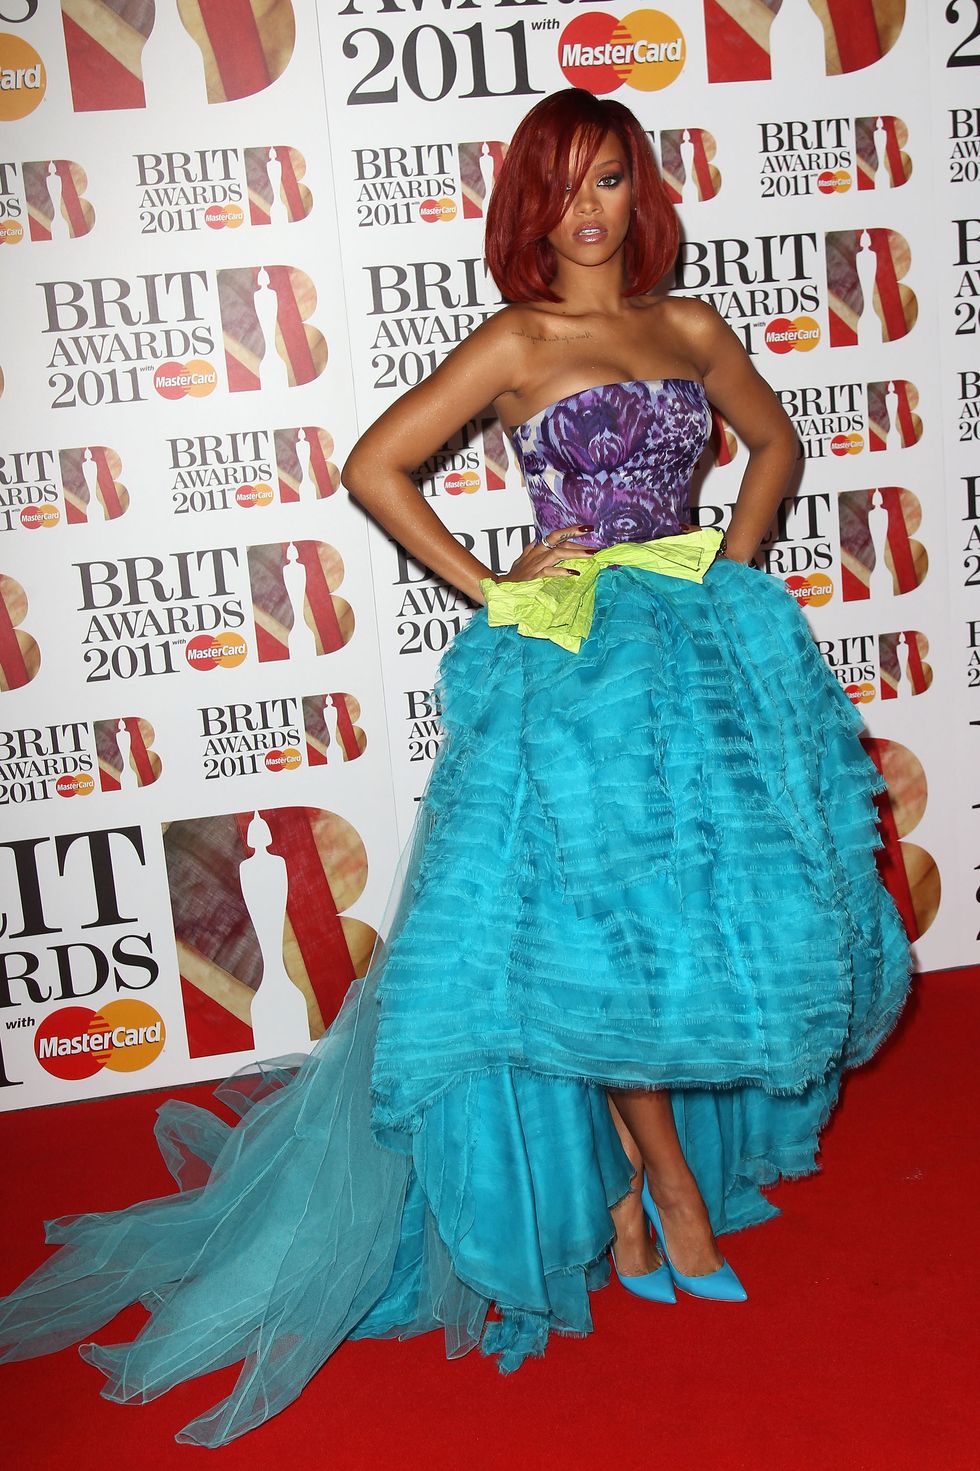 Rihanna at the 2011 Brit Awards